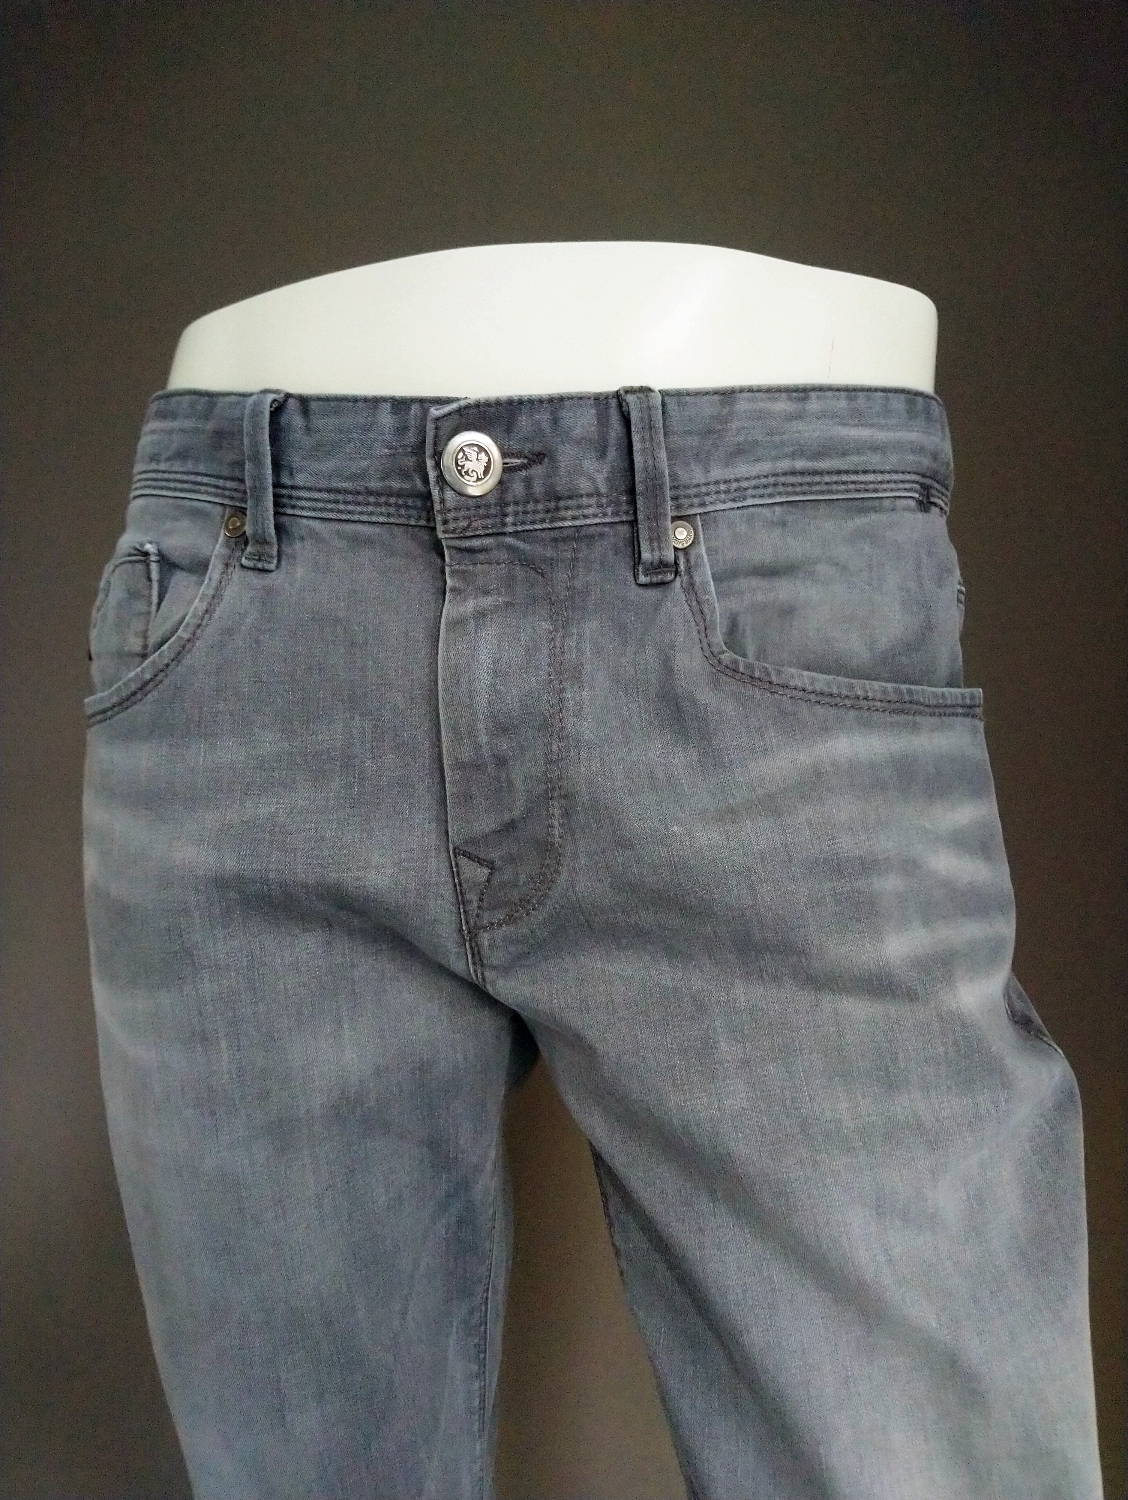 Vanguard Jeans. Grau farbig Größe W33 - L26. (verkürzt)